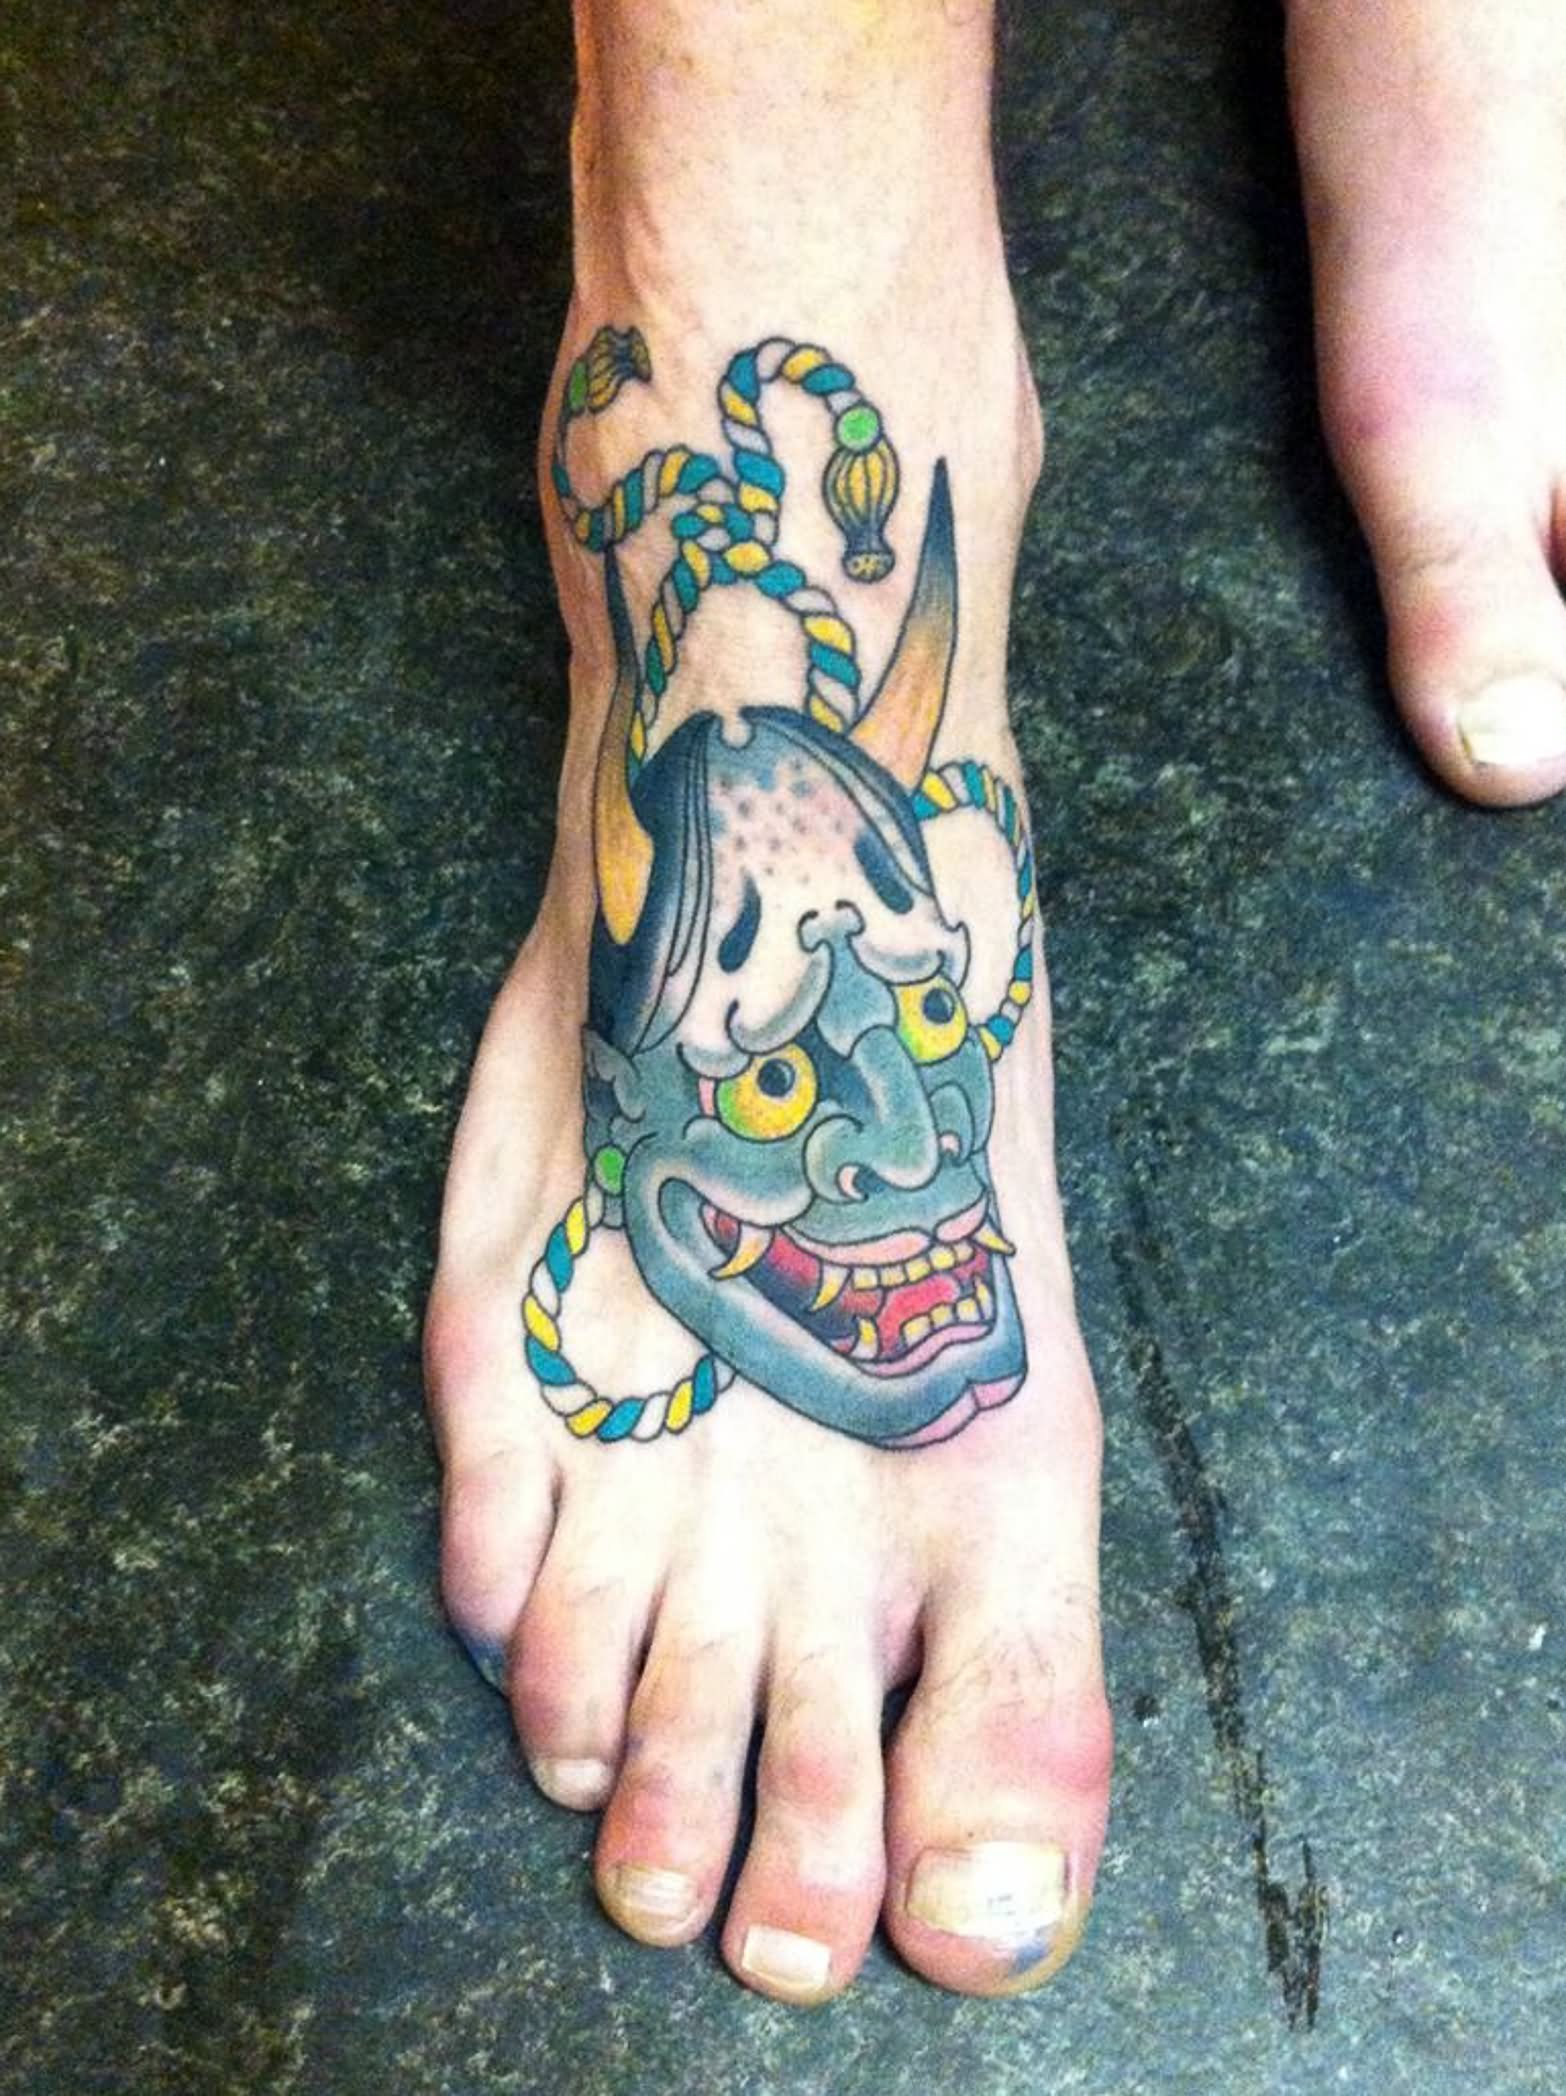 Colorful Hanya Head Tattoo On Foot